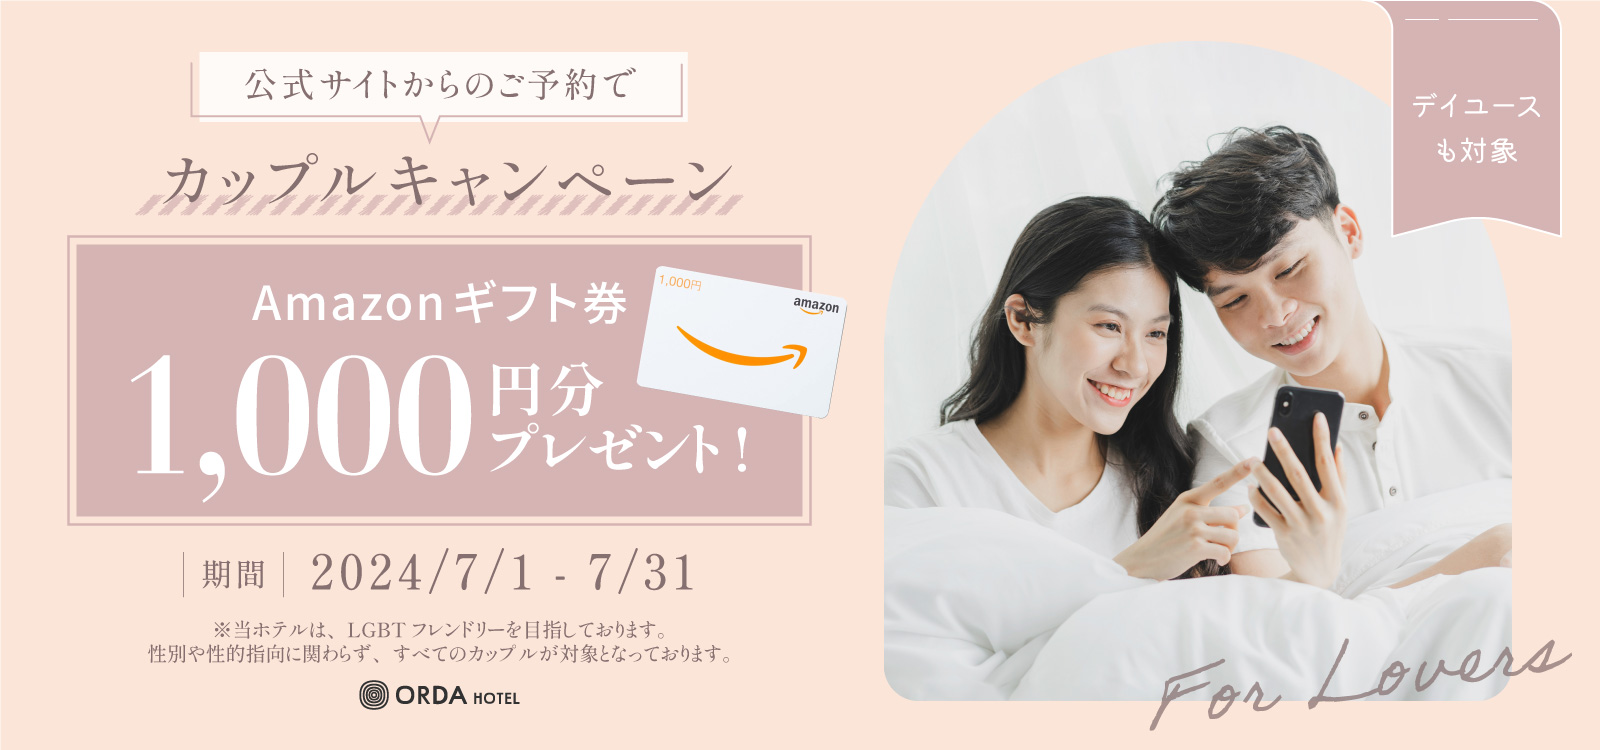 公式サイトからのご予約でカップルを対象に、Amazonギフト券1000円分をプレゼントいたします。